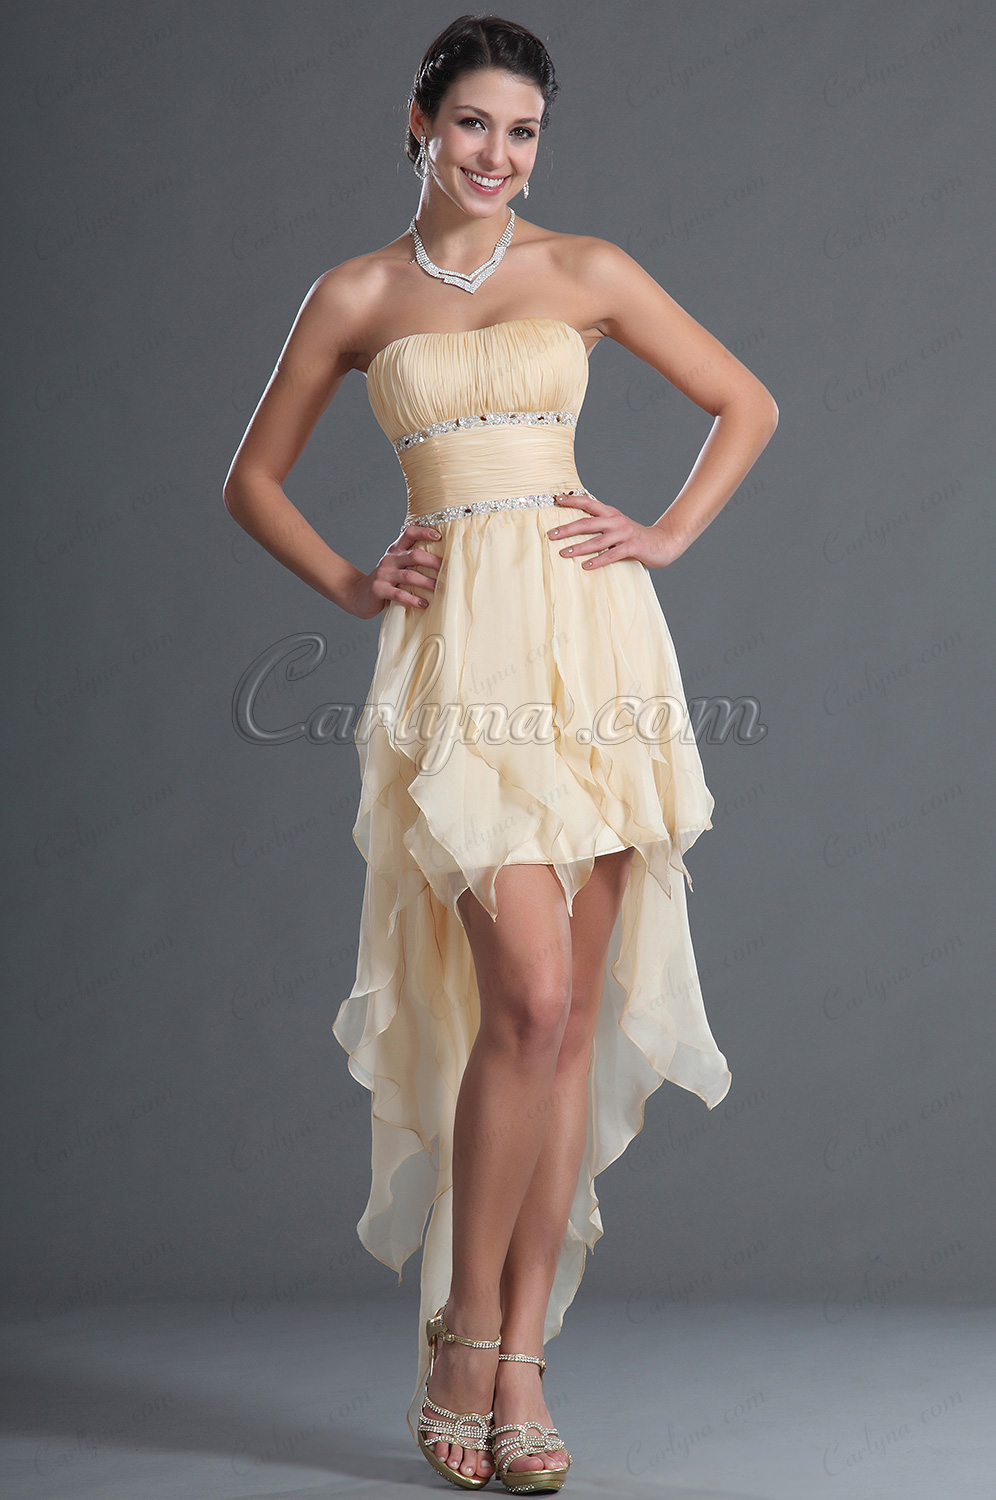 Petite robe beige asymétrique, robe de soirée courte originale taille empire sans bretelle